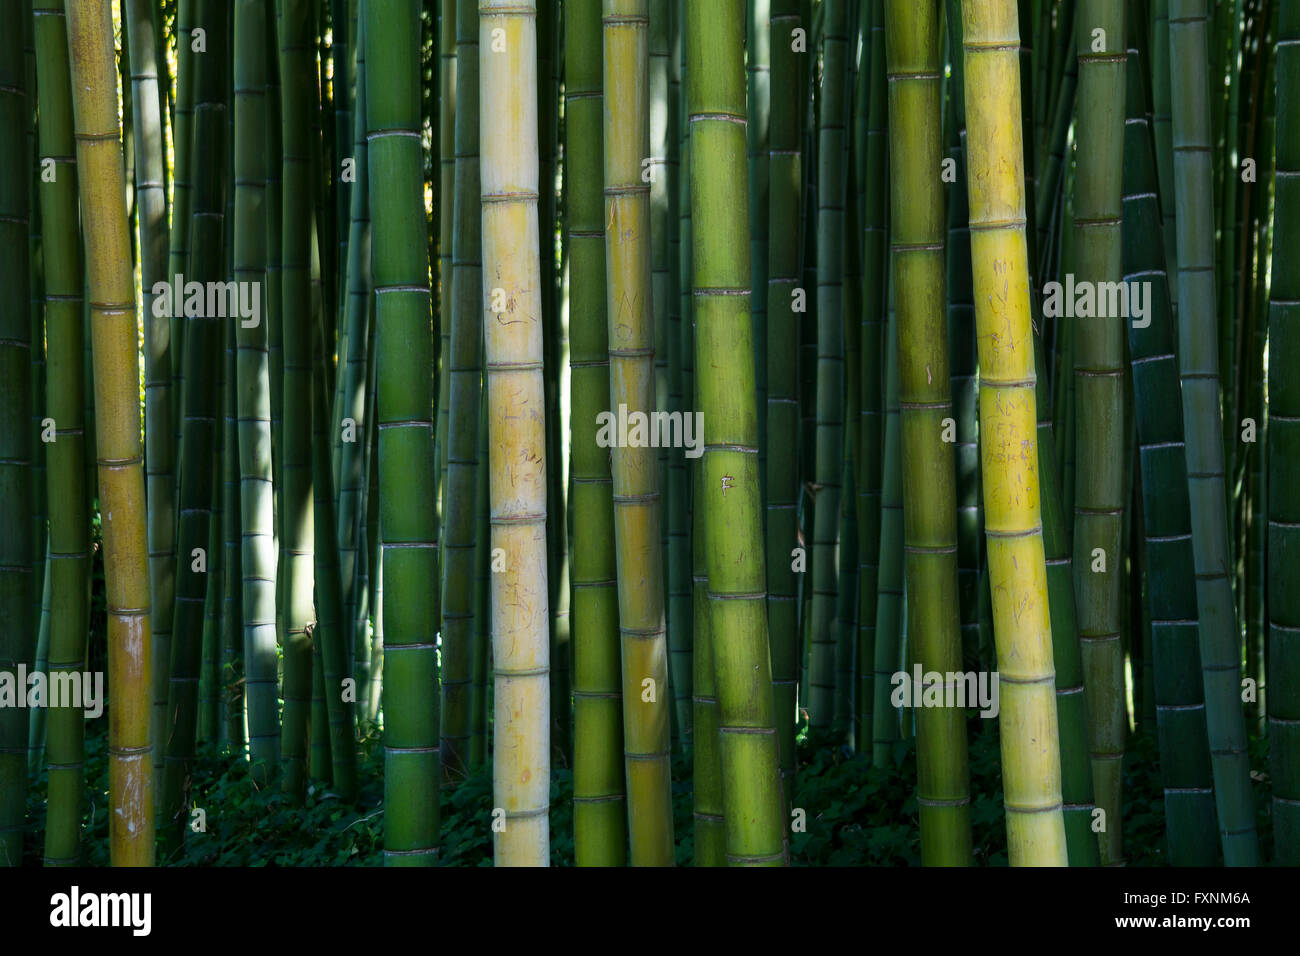 Bamboo forest, Garden of Ninfa, Ninfa, Latina Province, Italy Stock Photo